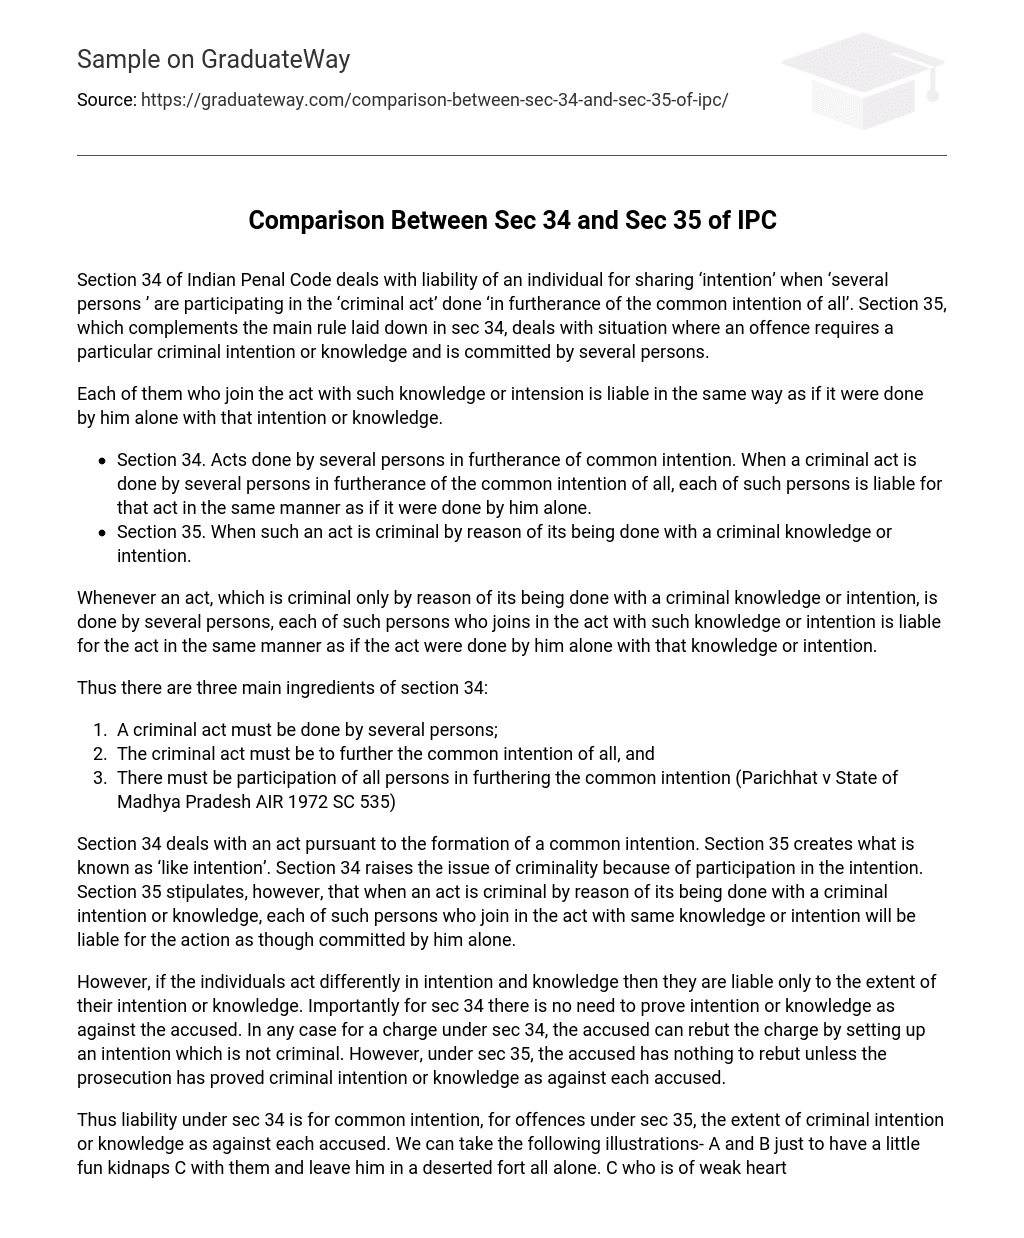 Comparison Between Sec 34 and Sec 35 of IPC